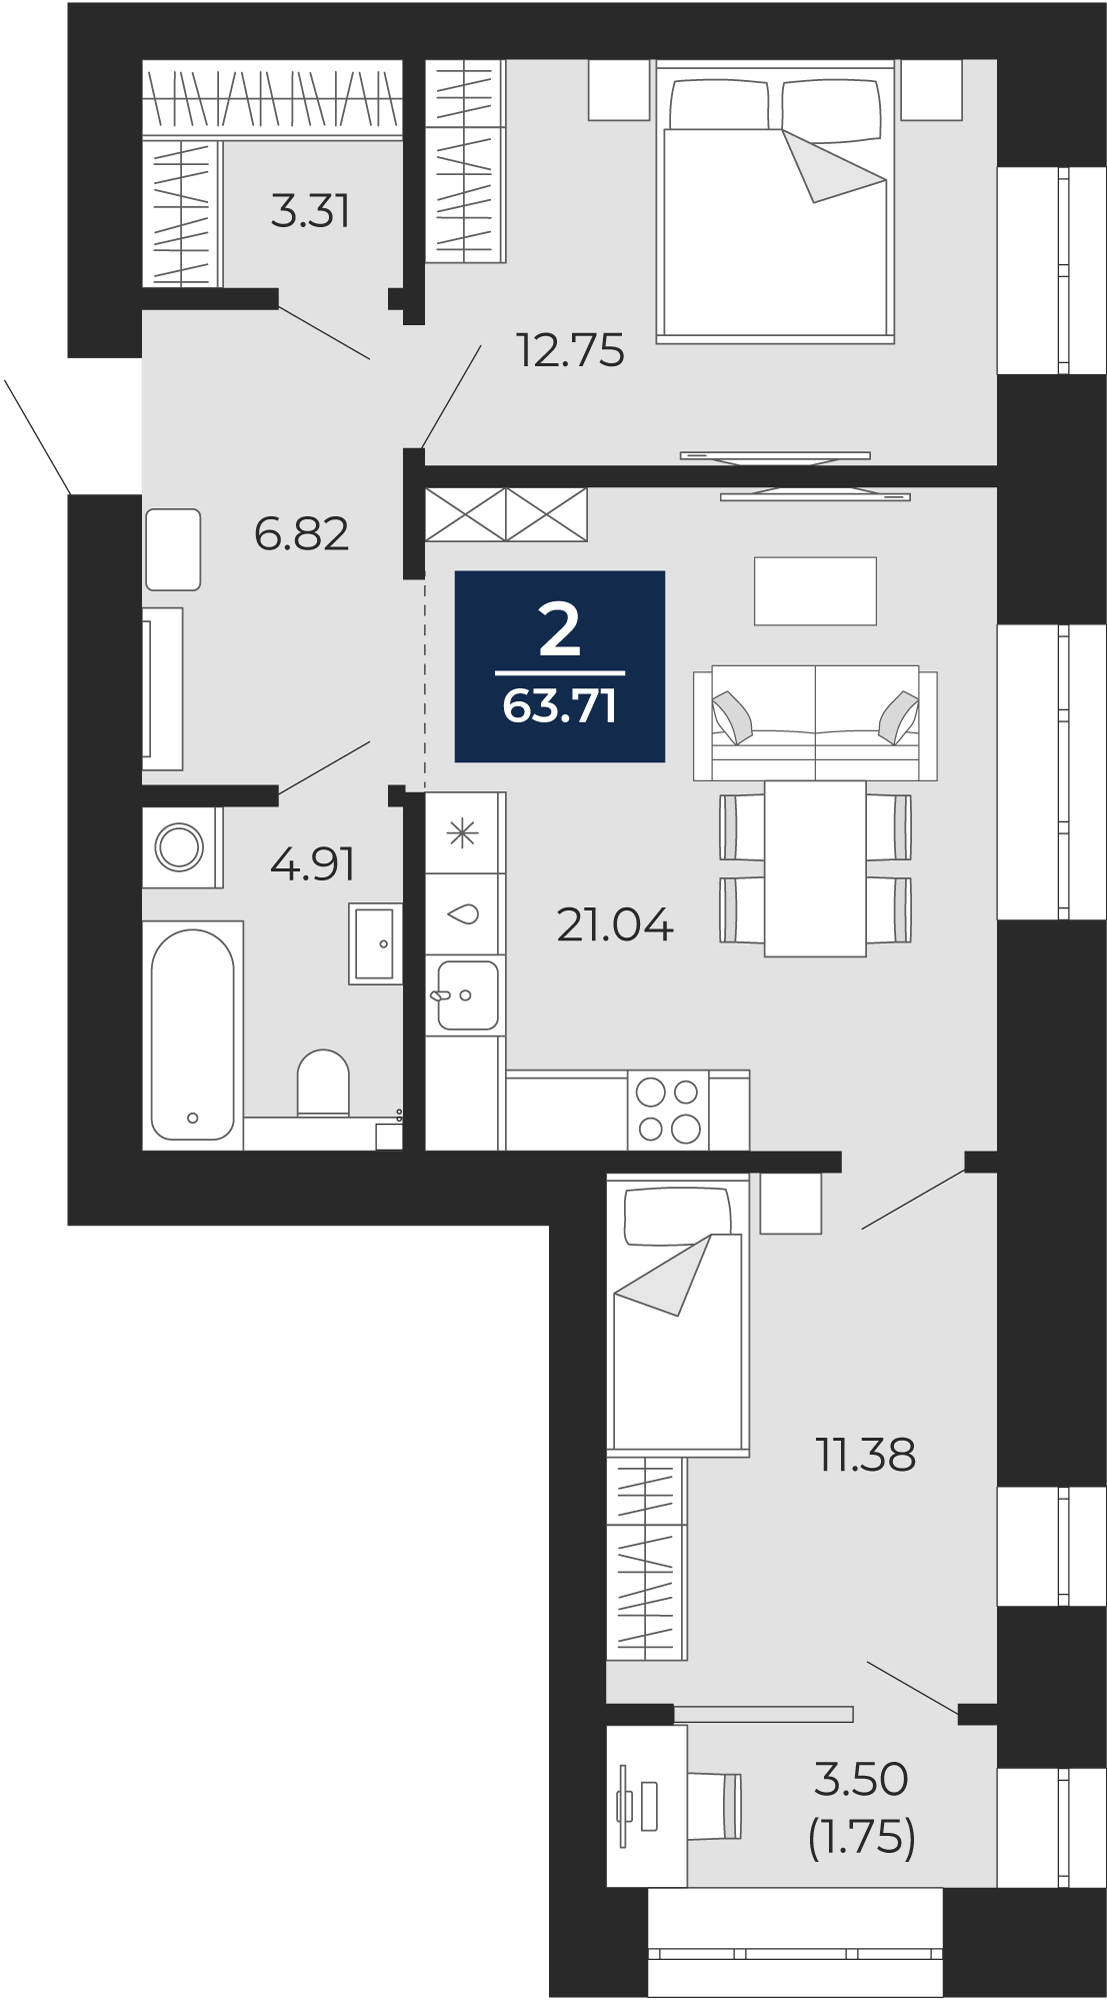 Квартира № 140, 2-комнатная, 63.71 кв. м, 4 этаж